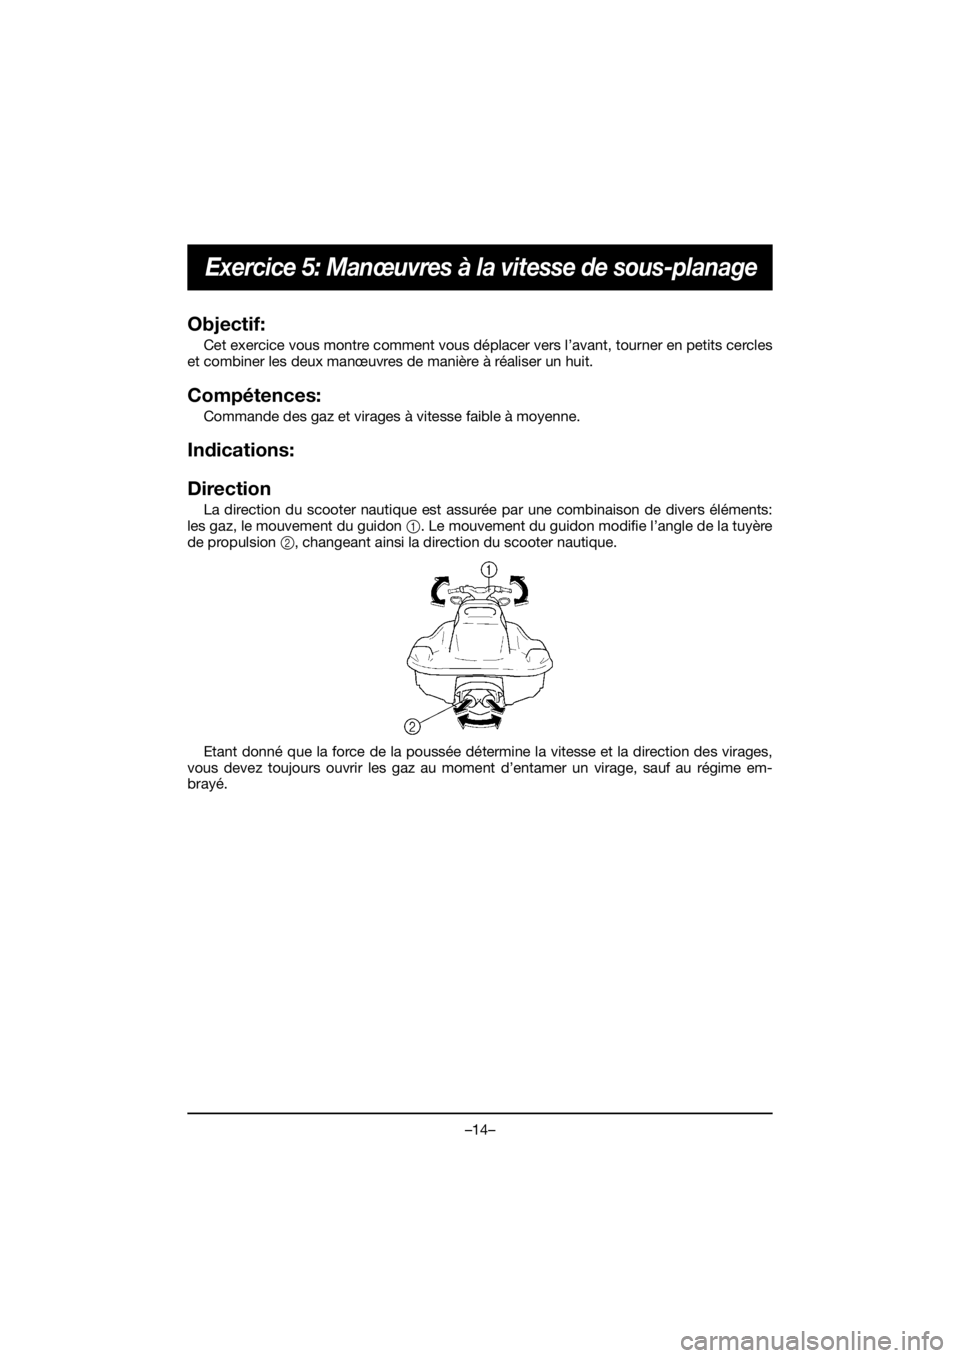 YAMAHA EX 2019  Manual de utilização (in Portuguese) –14–
Exercice 5: Manœuvres à la vitesse de sous-planage
Objectif: 
Cet exercice vous montre comment vous déplacer vers l’avant, tourner en petits cercles
et combiner les deux manœuvres de ma